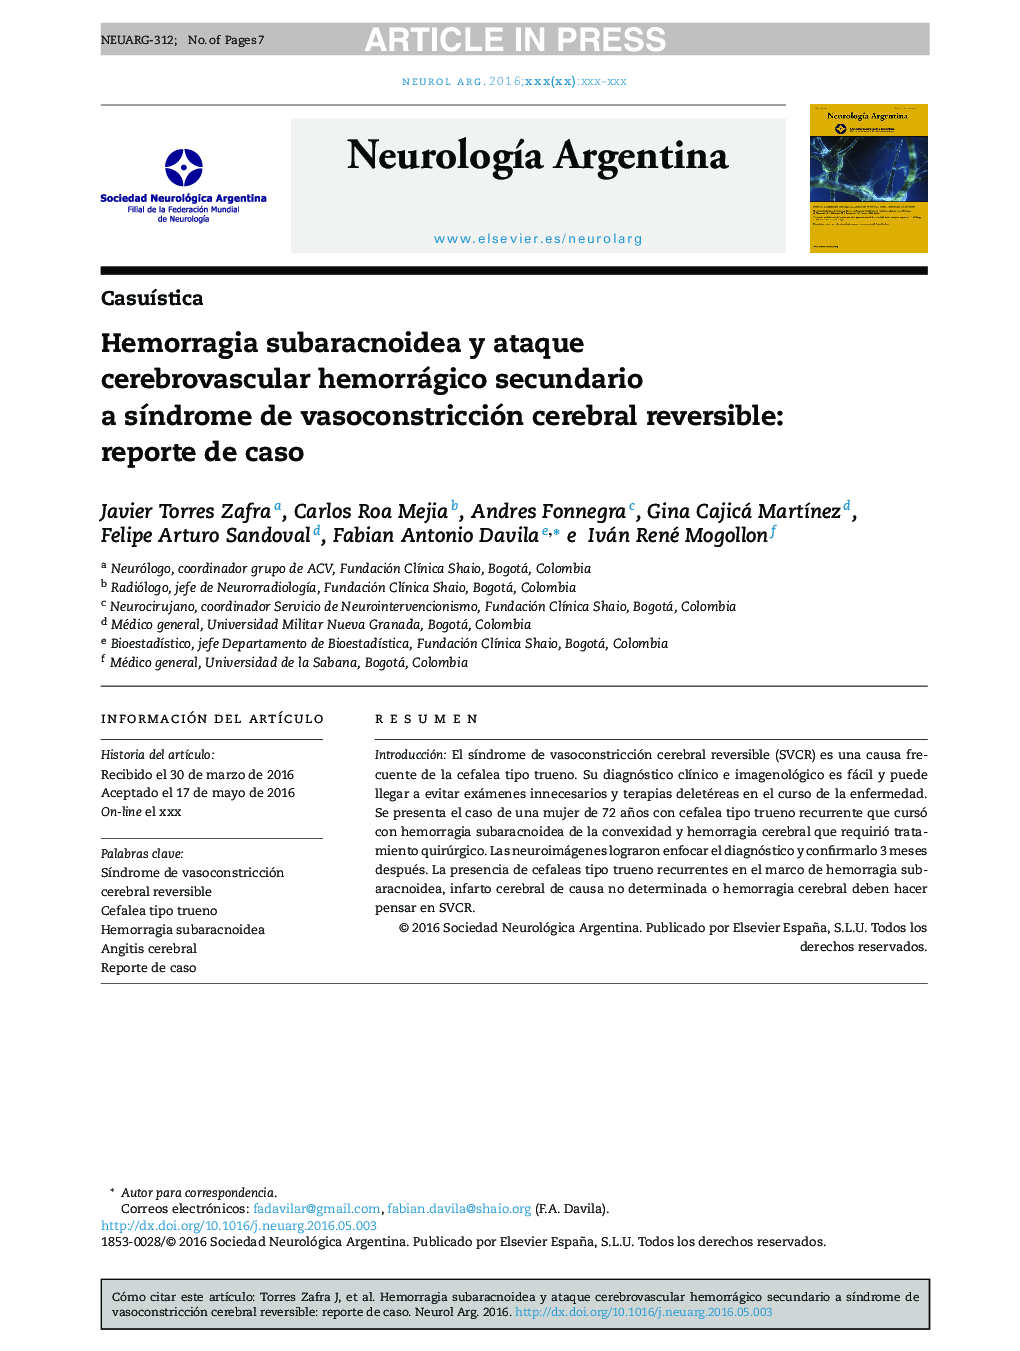 Hemorragia subaracnoidea y ataque cerebrovascular hemorrágico secundario a sÃ­ndrome de vasoconstricción cerebral reversible: reporte de caso